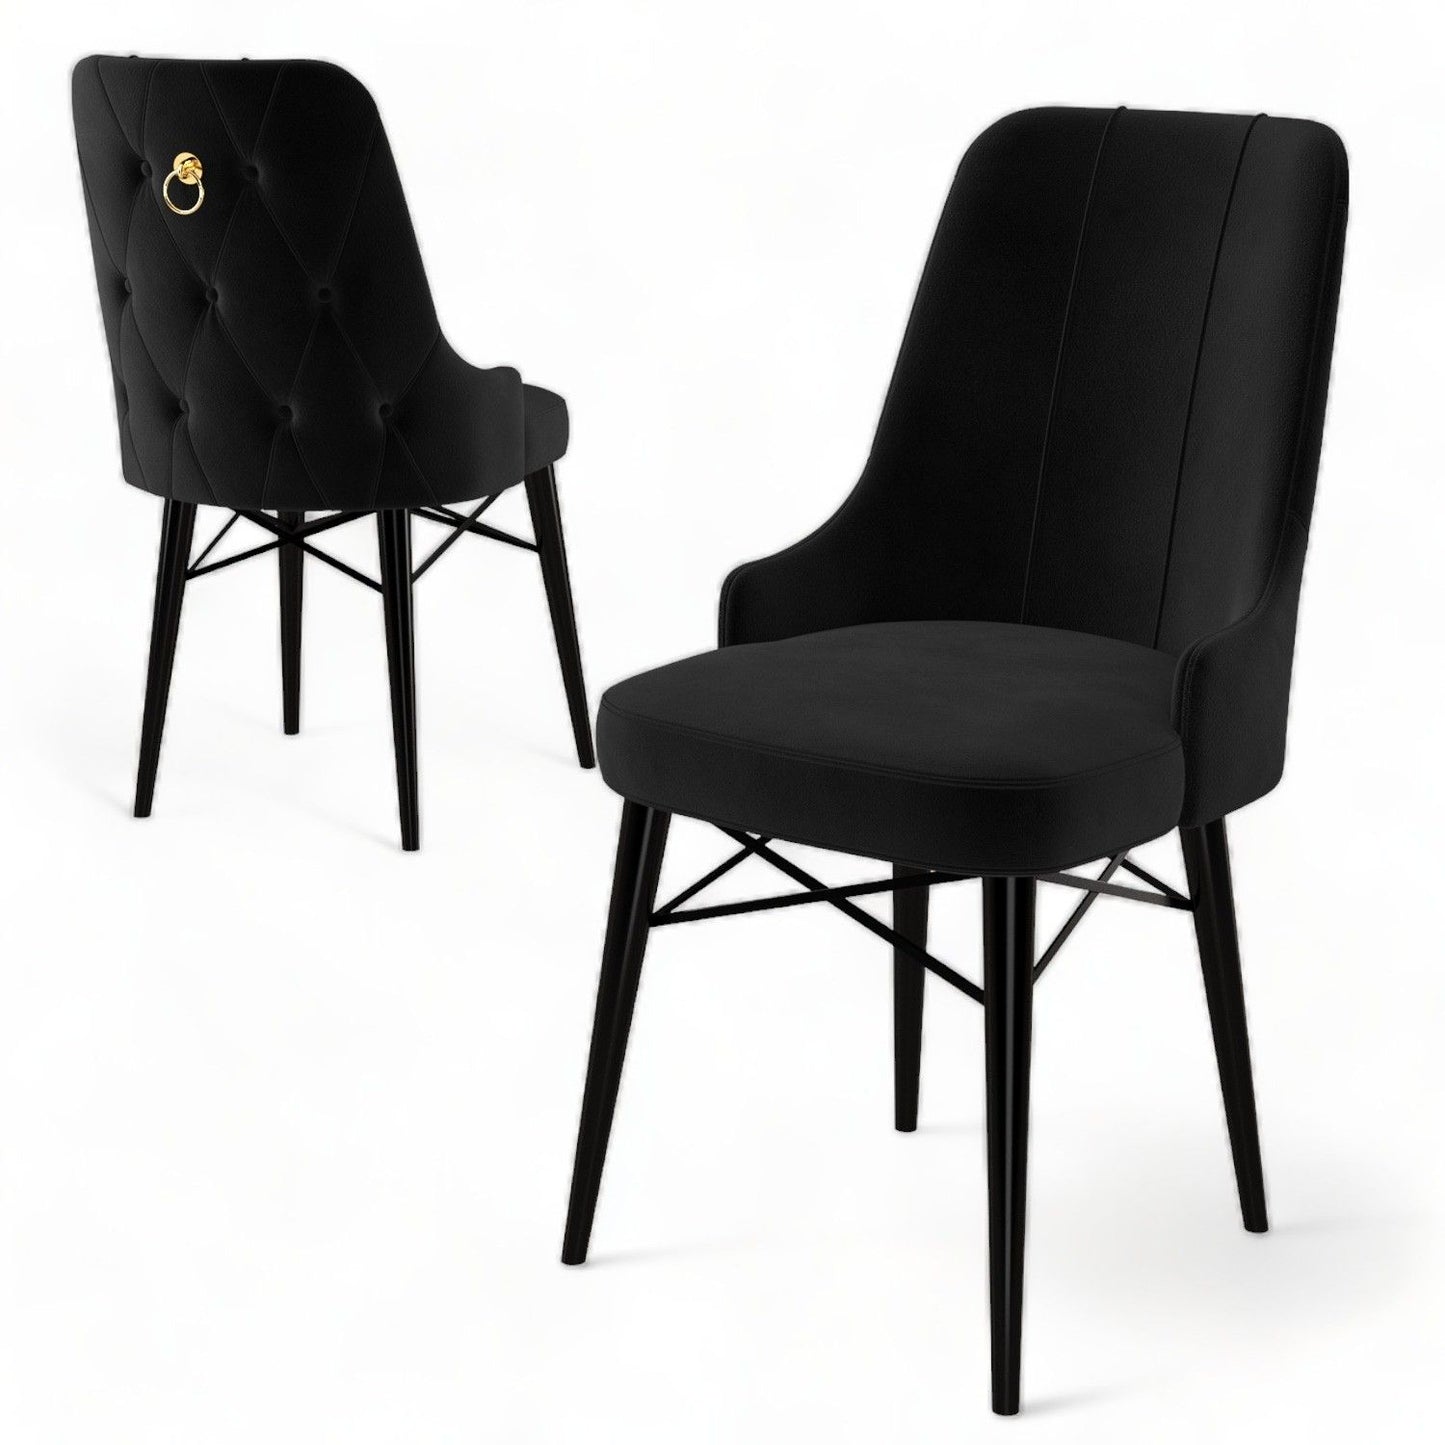 Pare - Black - Chair Set (4 Pieces)